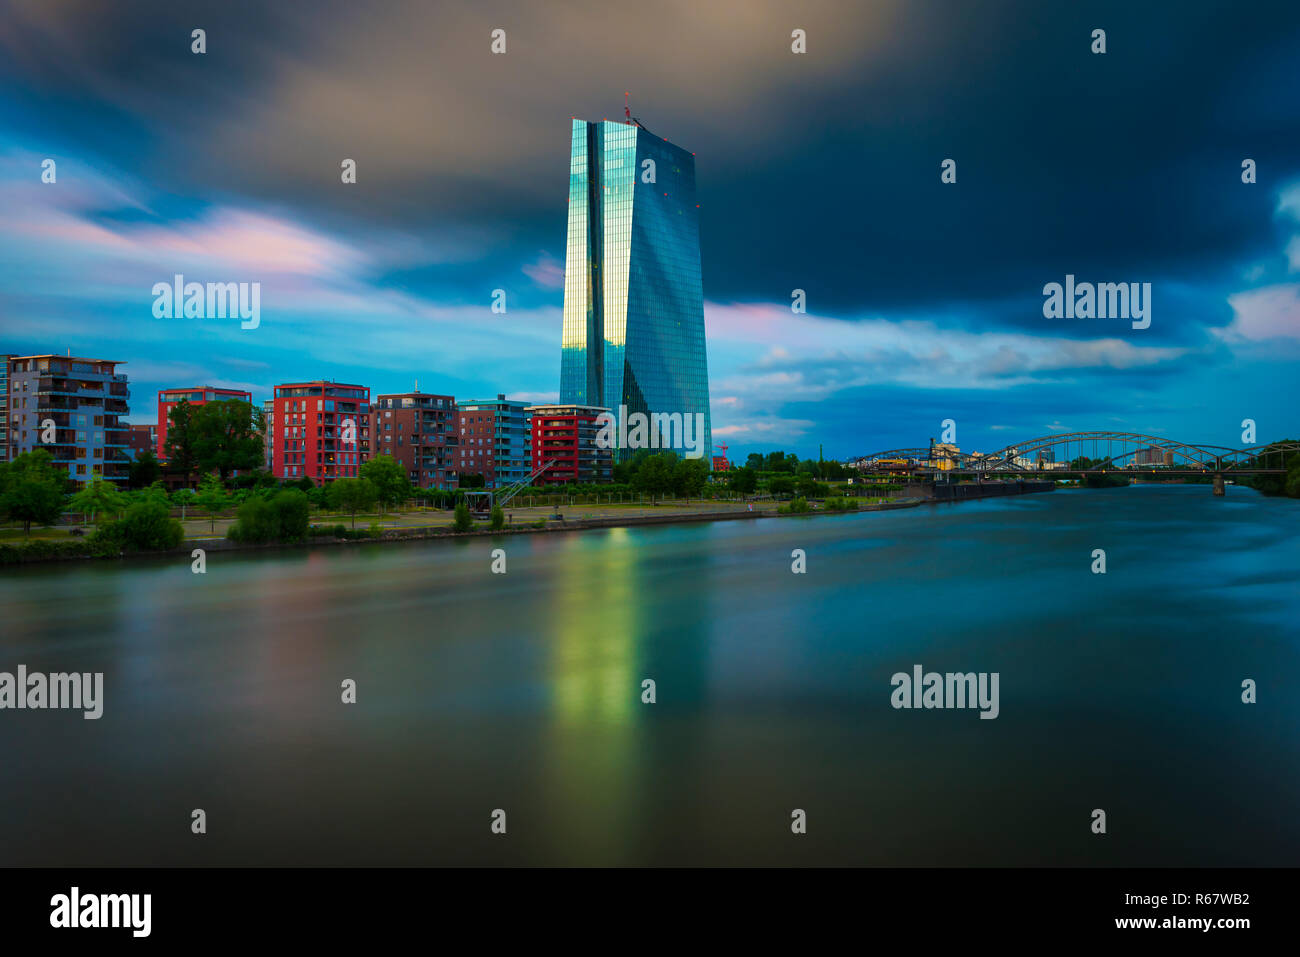 Banque centrale européenne, BCE. am Main, ciel nuageux au crépuscule, Frankfurt am Main, Hesse, Allemagne Banque D'Images